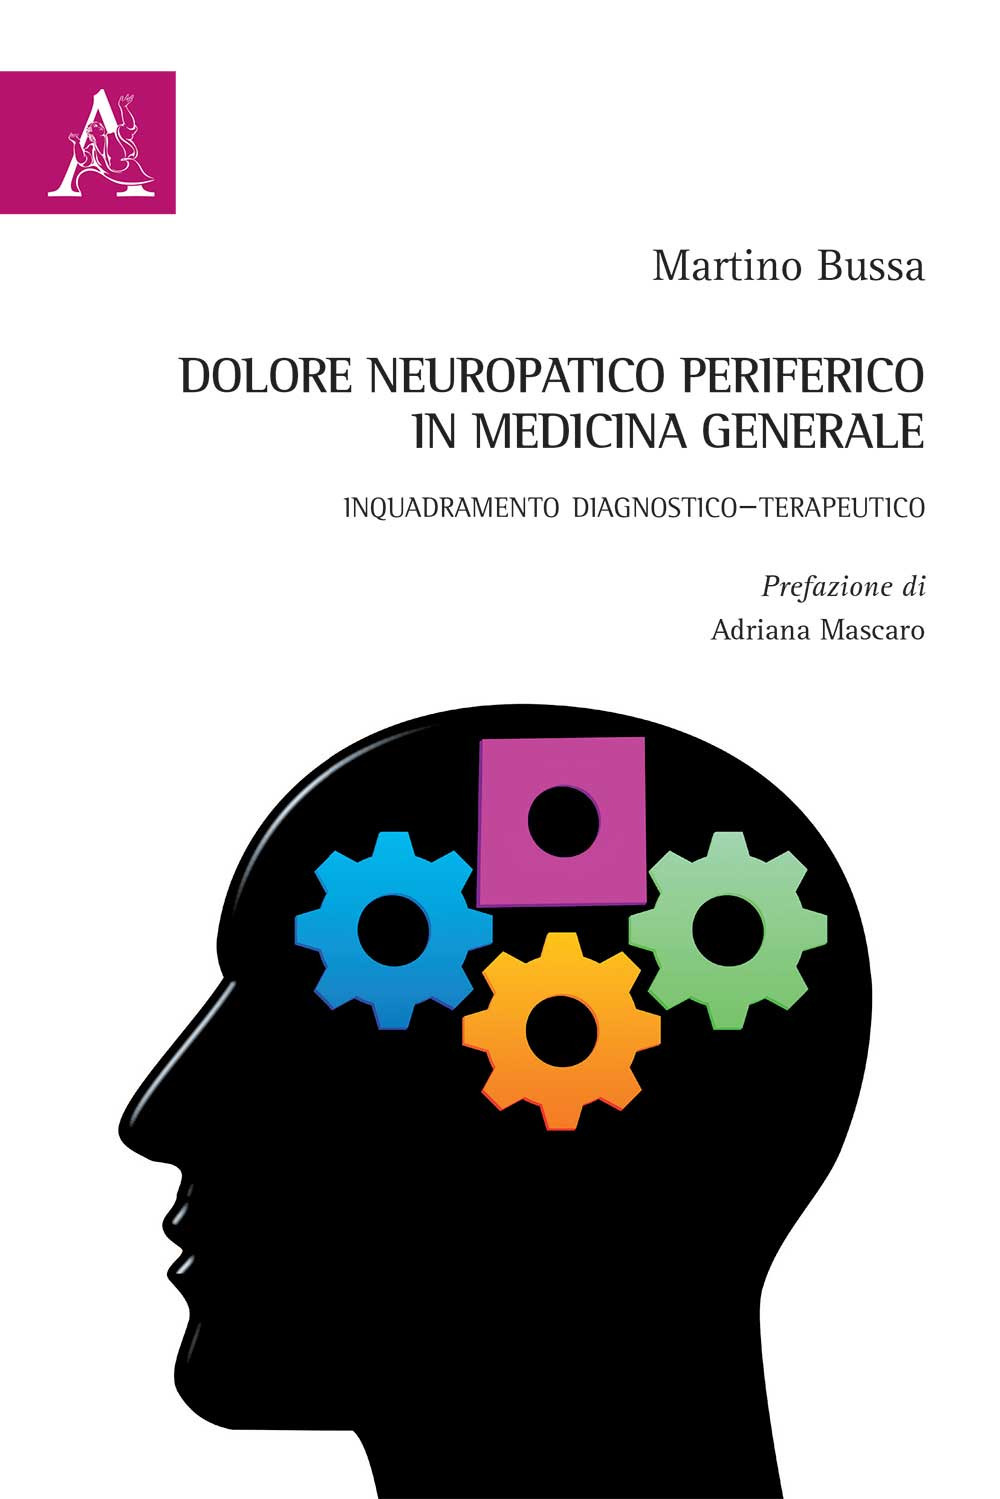 Dolore neuropatico periferico in Medicina Generale. Inquadramento diagnostico-terapeutico